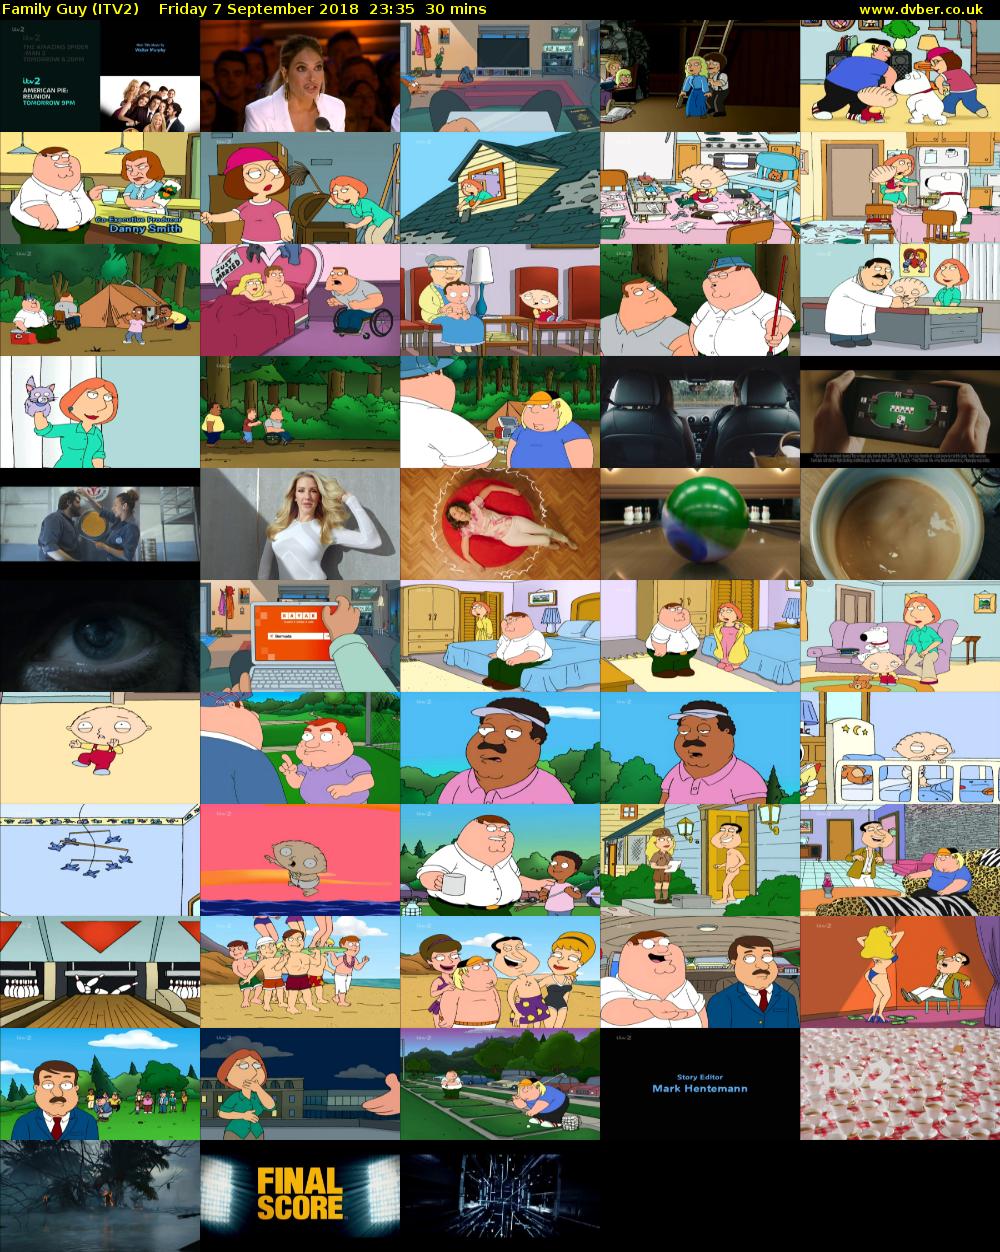 Family Guy (ITV2) Friday 7 September 2018 23:35 - 00:05